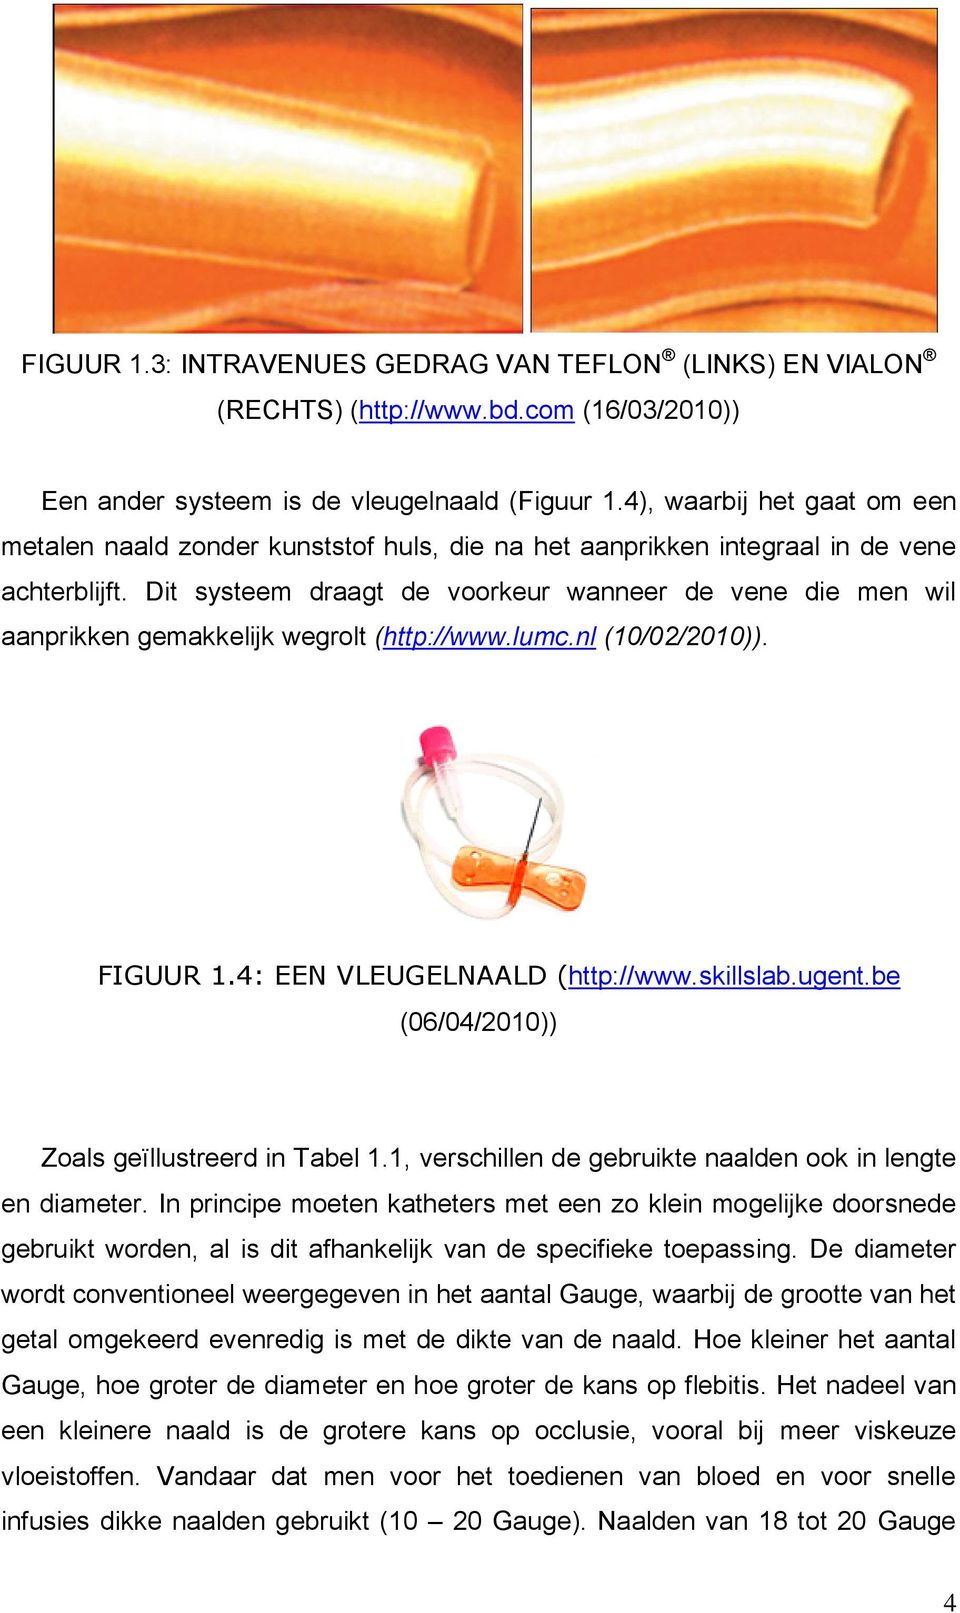 Dit systeem draagt de voorkeur wanneer de vene die men wil aanprikken gemakkelijk wegrolt (http://www.lumc.nl (10/02/2010)). FIGUUR 1.4: EEN VLEUGELNAALD (http://www.skillslab.ugent.